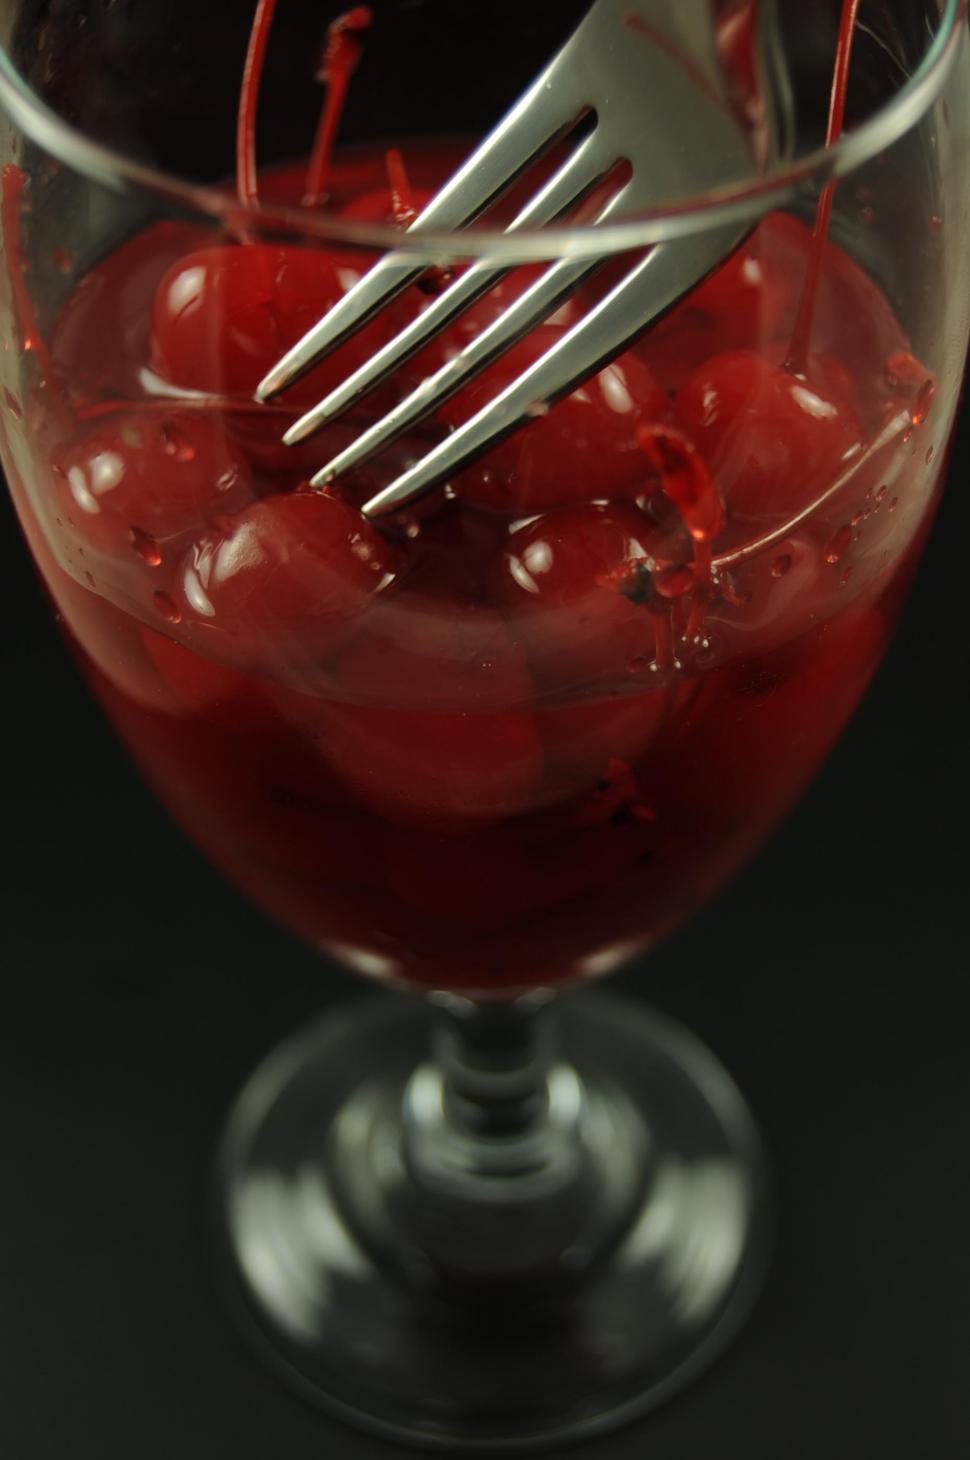 Free Image of Maraschino cherries 